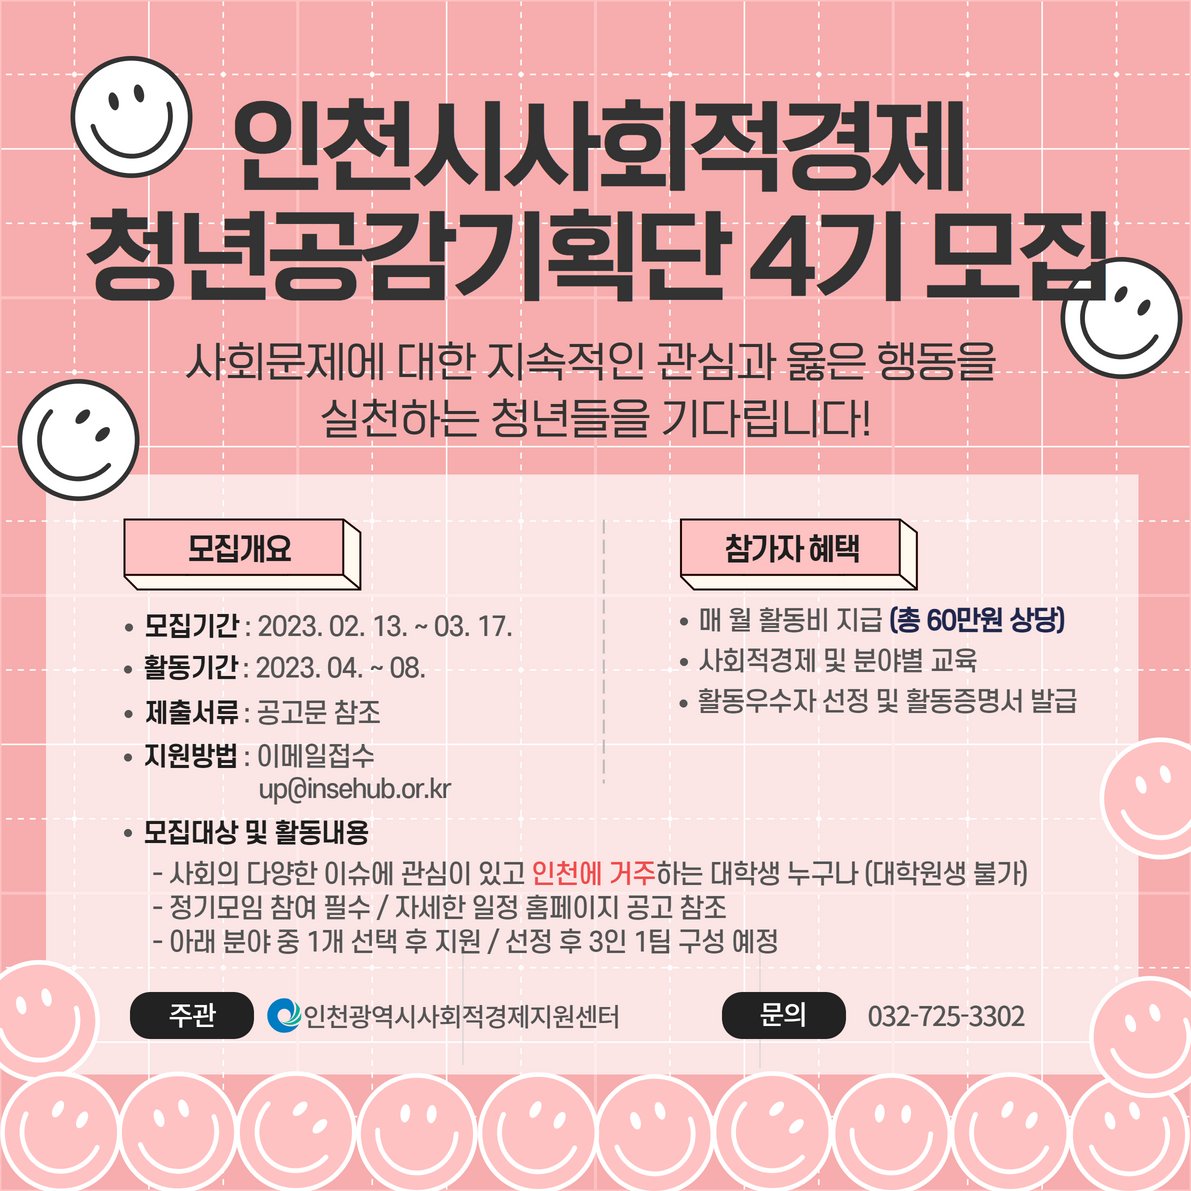 2023 인천광역시사회적경제청년공감기획단 4기 연장모집